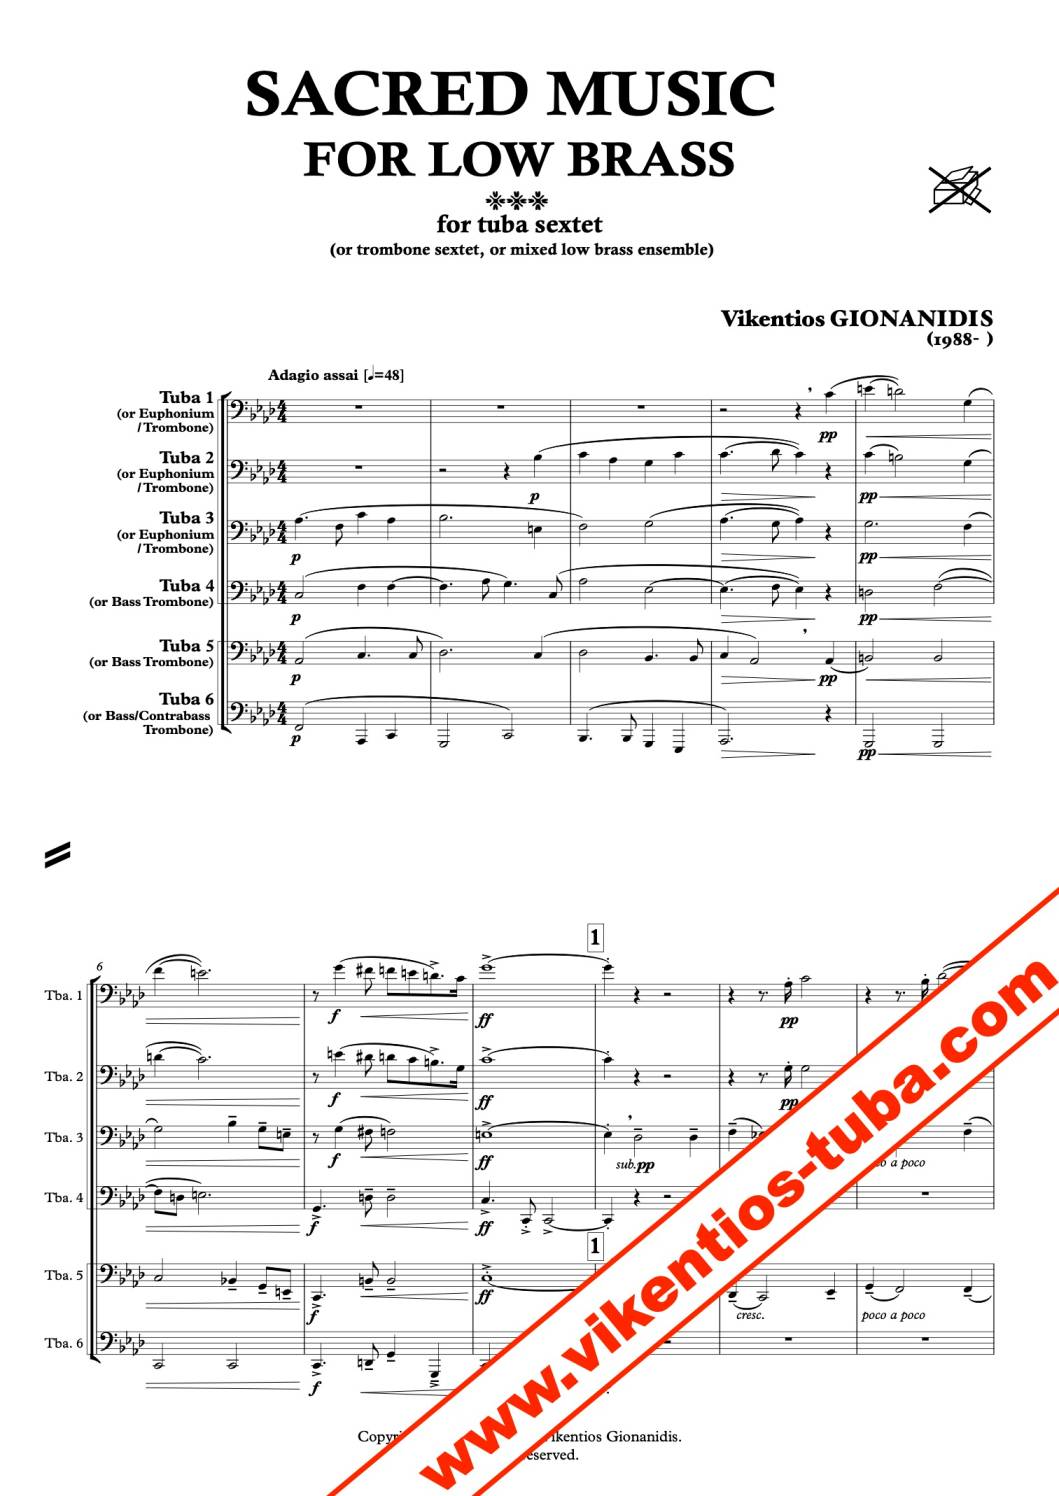 Sacred music for low brass - V.Gionanidis - tuba sextet / trombone sextet /  mixed low brass ensemble - Vikentios Gionanidis Tuba